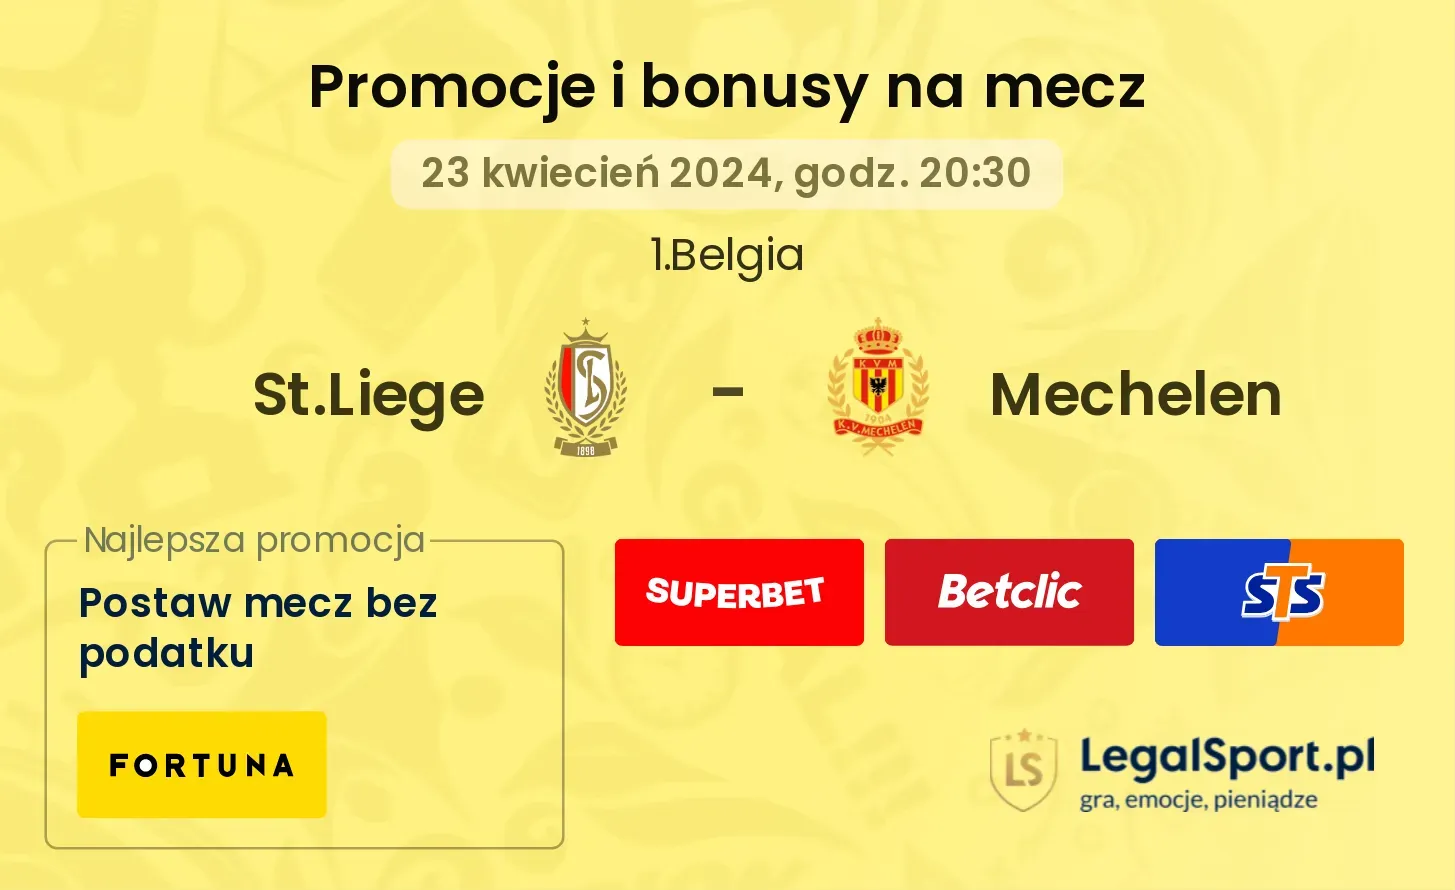 St.Liege - Mechelen promocje bonusy na mecz